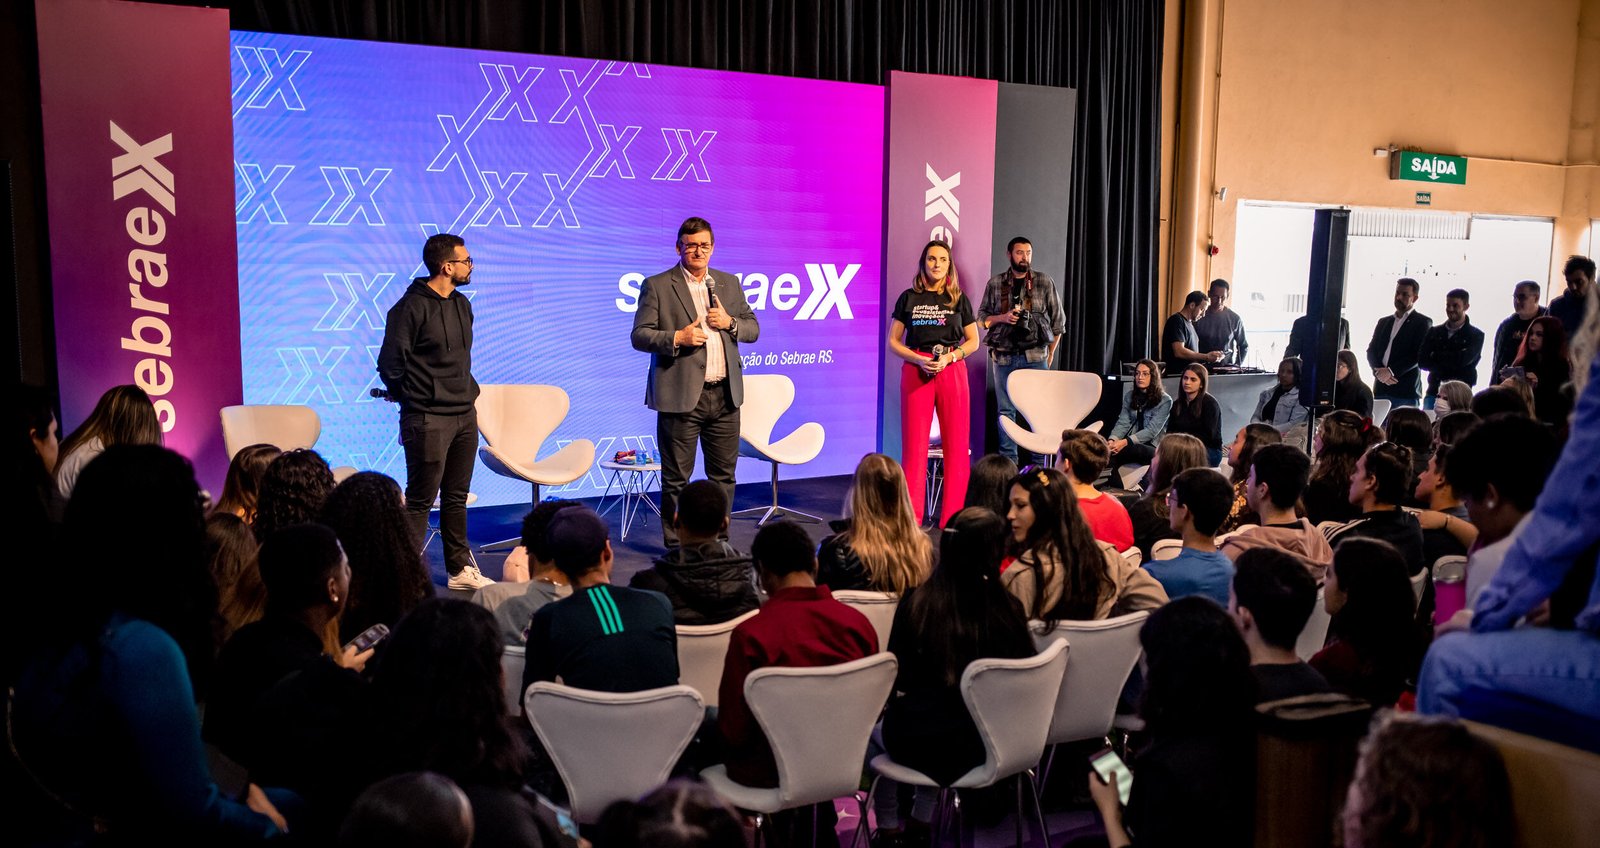 Arena de Inovação Sebrae X realiza palestras voltadas para jovens com os temas de inovação e empreendedorismo